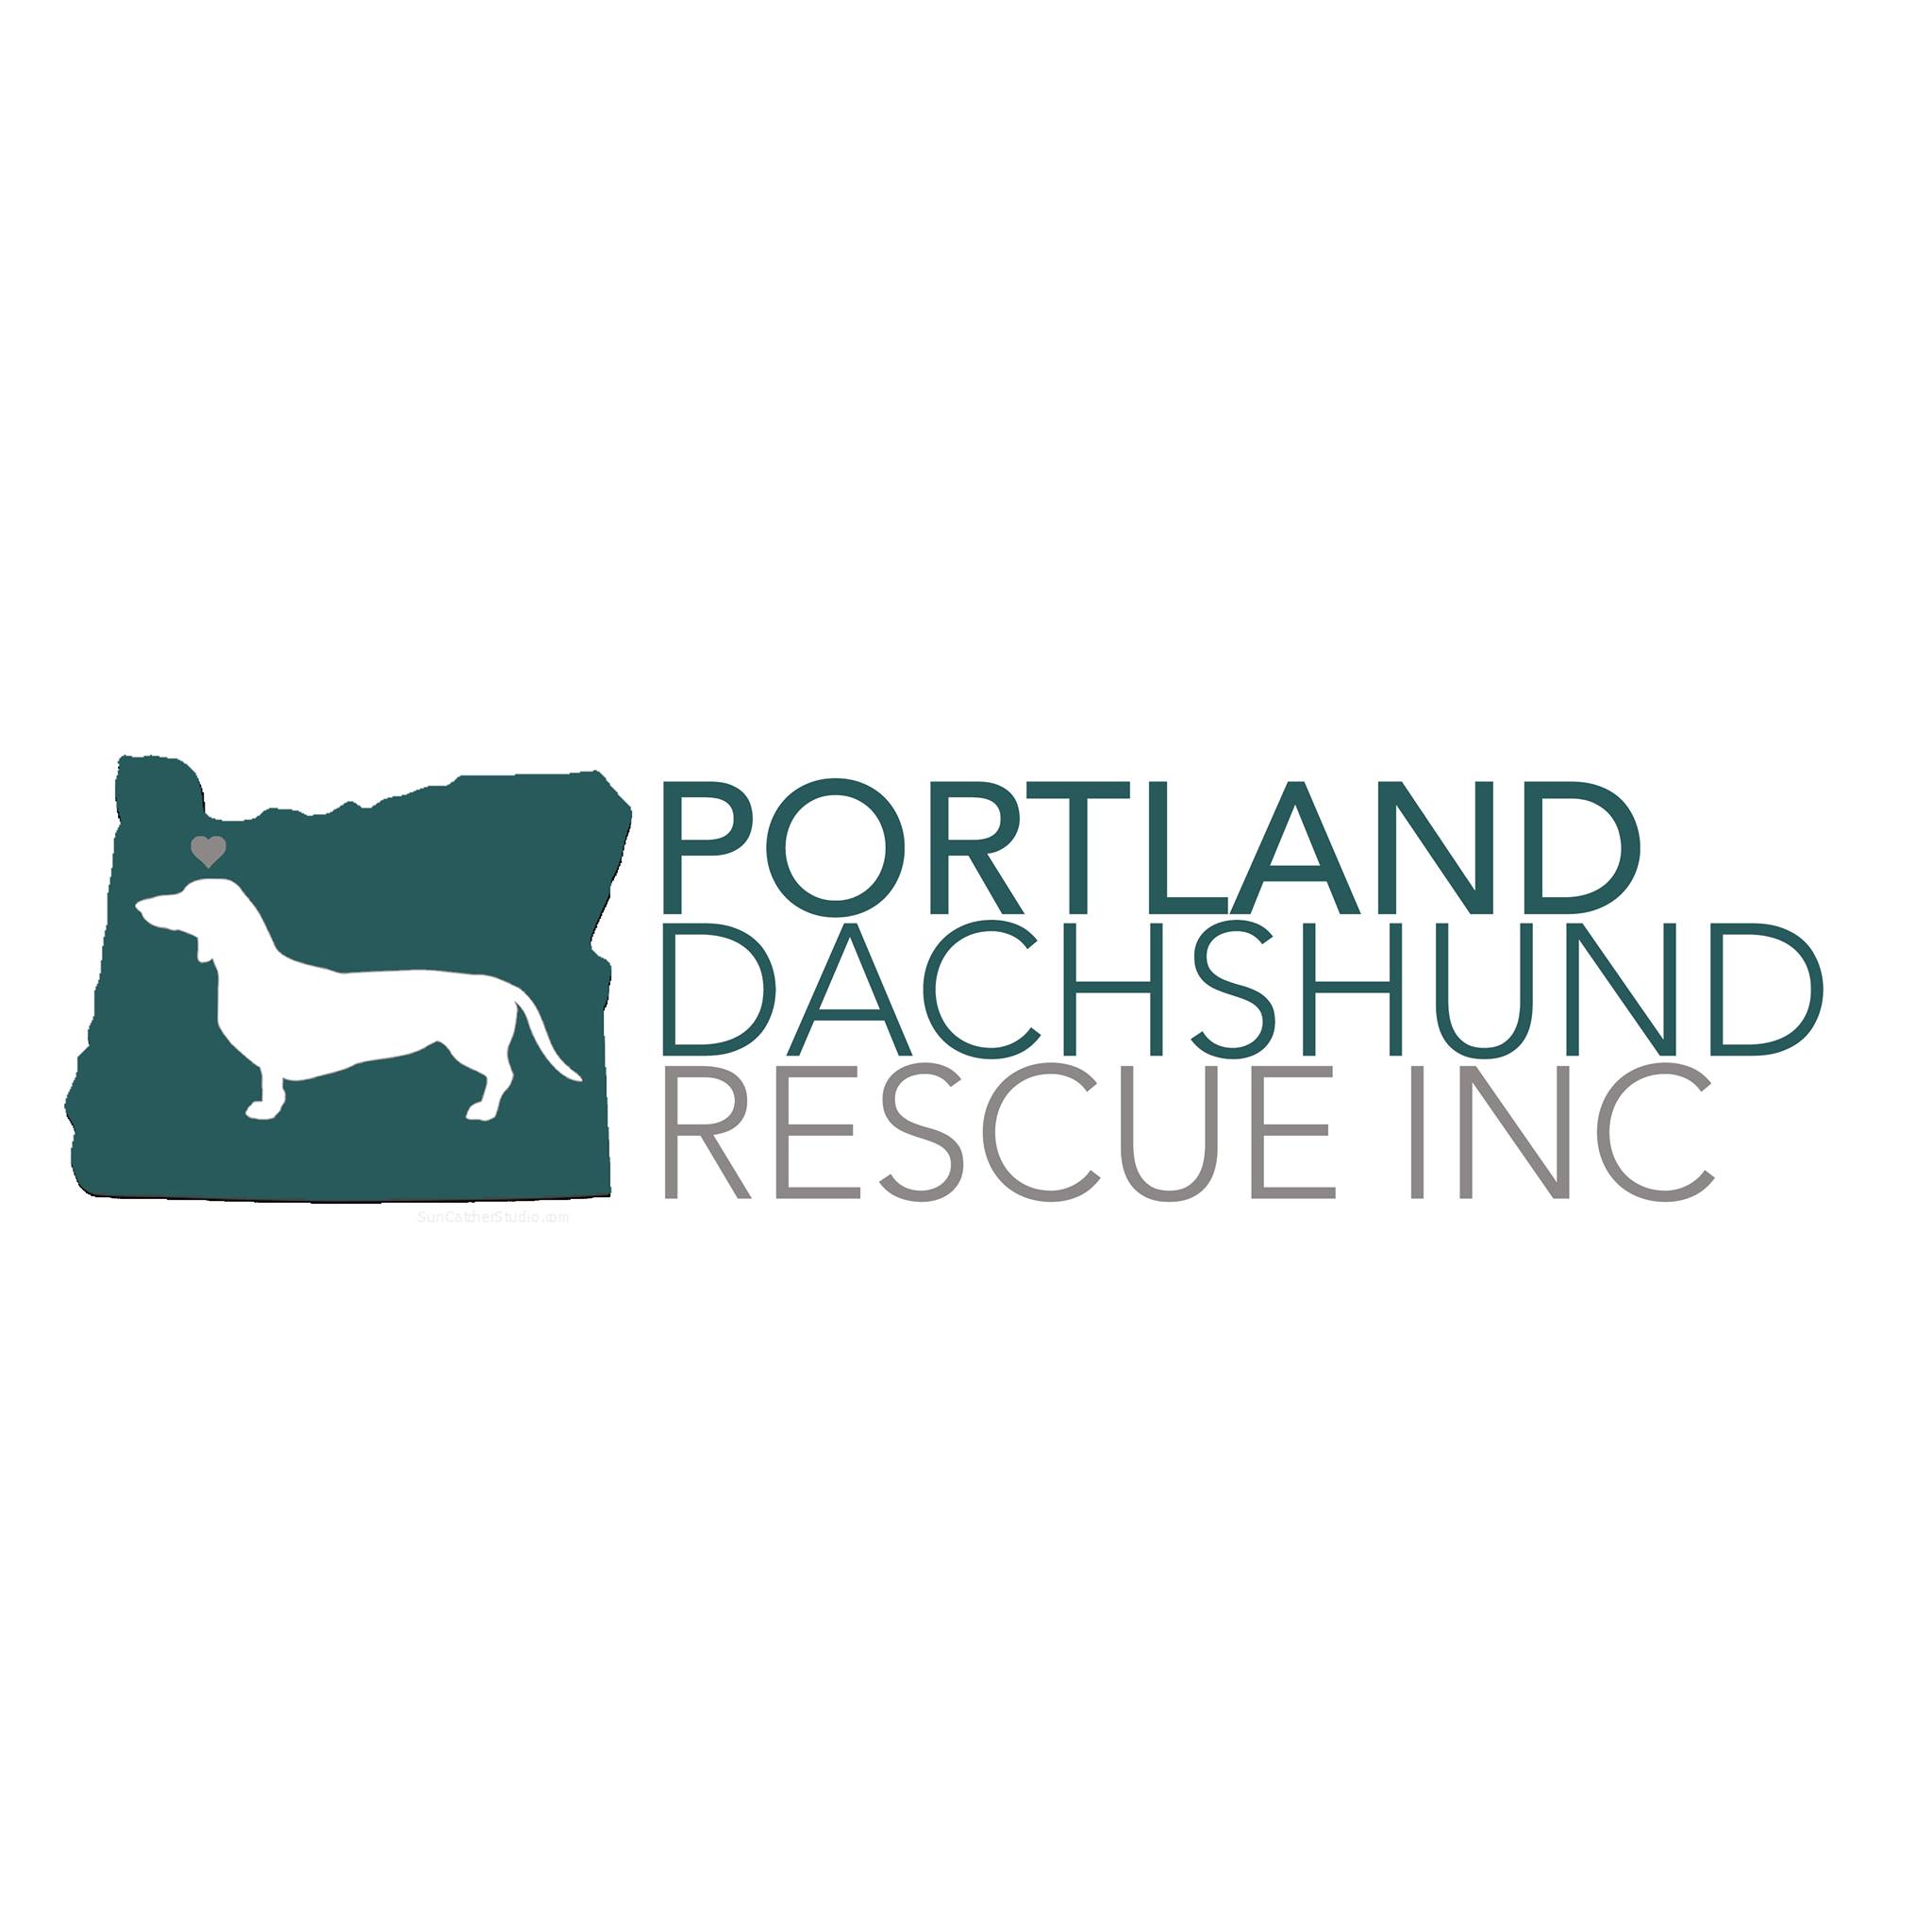 Portland Dachshund Rescue, Inc.